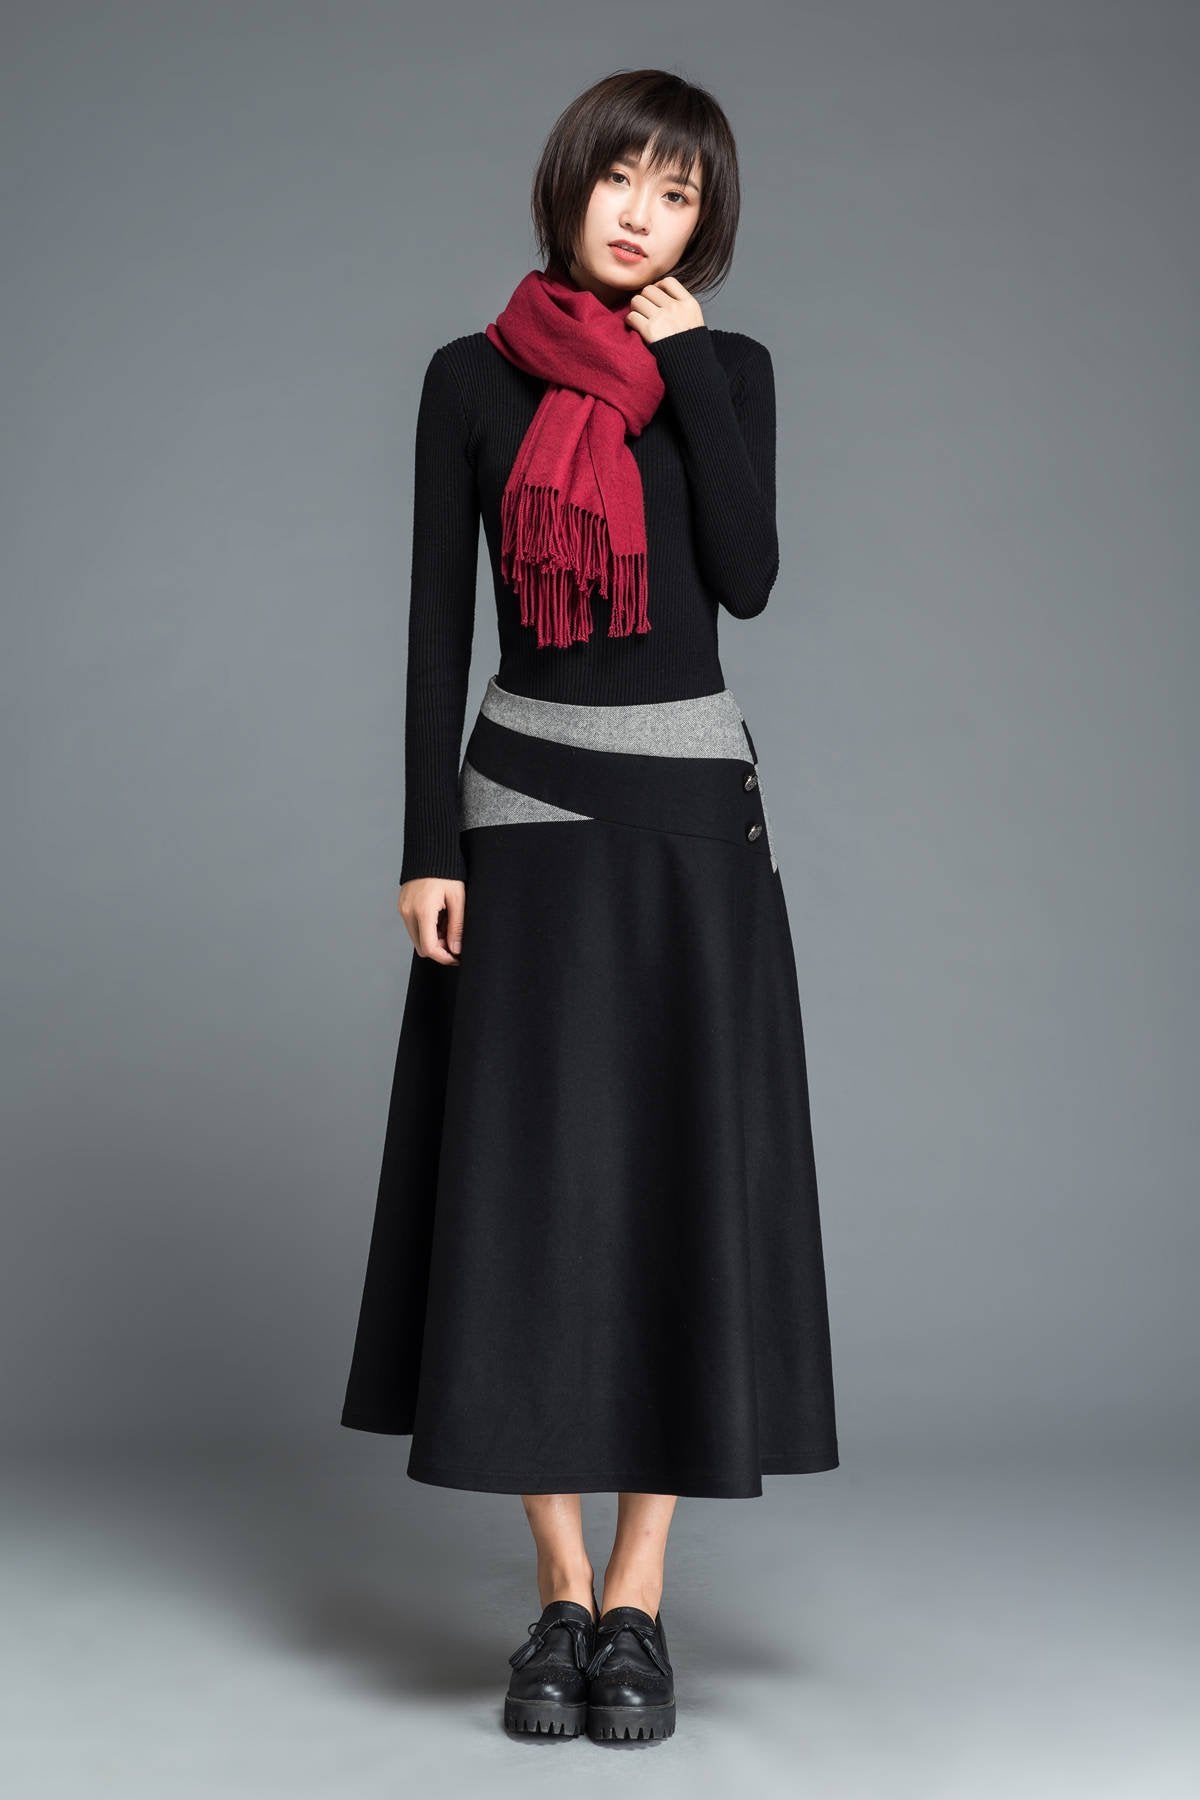 Black wool skirt, winter skirt, A line skirt, patchwork skirt, woman skirt, warm winter skirt, midi skirt, womens skirt, custom skirt C1215